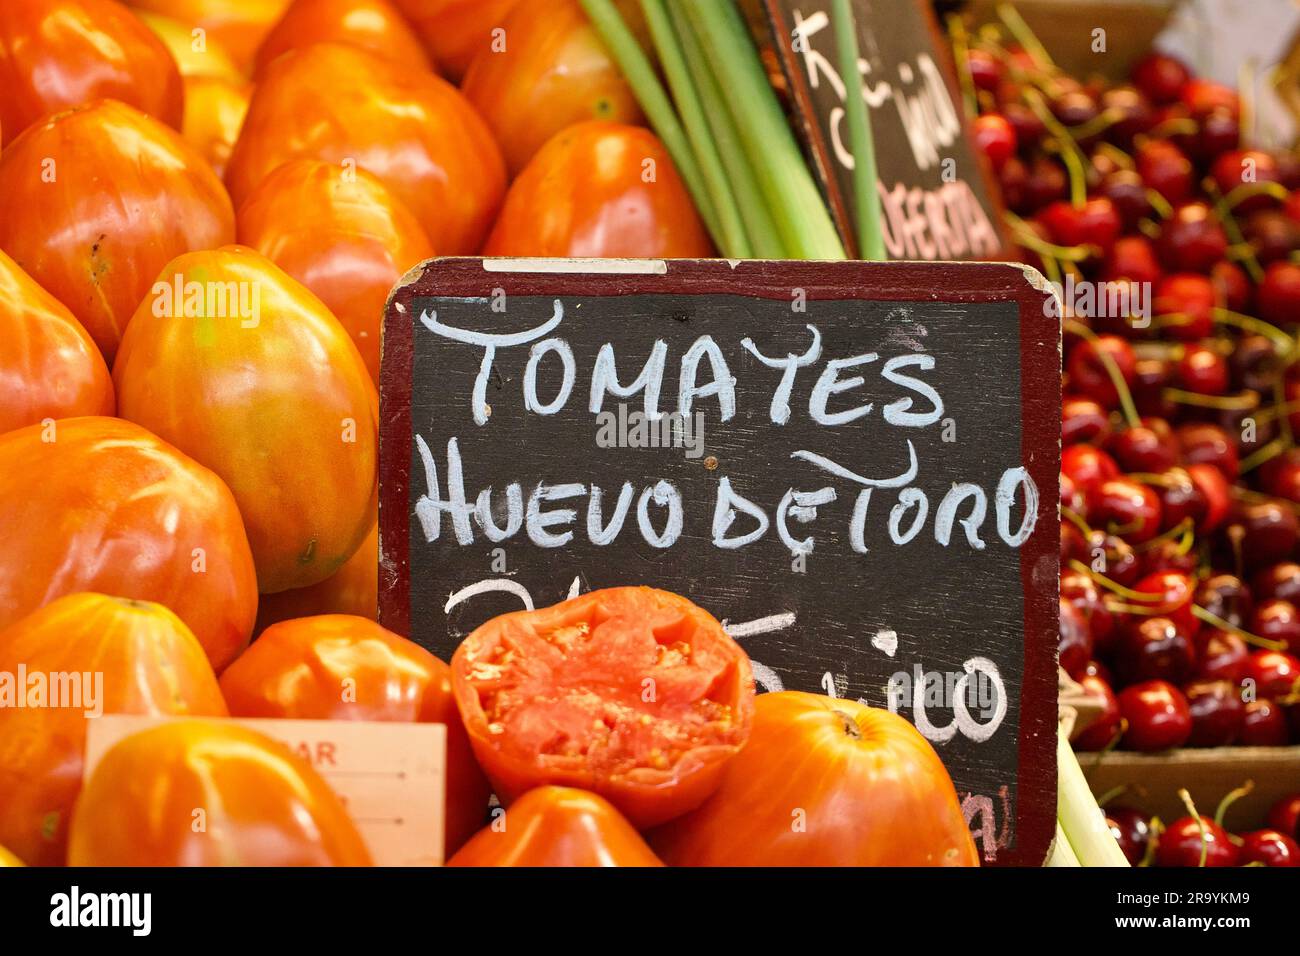 Huevo de Toro Tomaten auf einem spanischen Markt, Malaga, Spanien Stockfoto